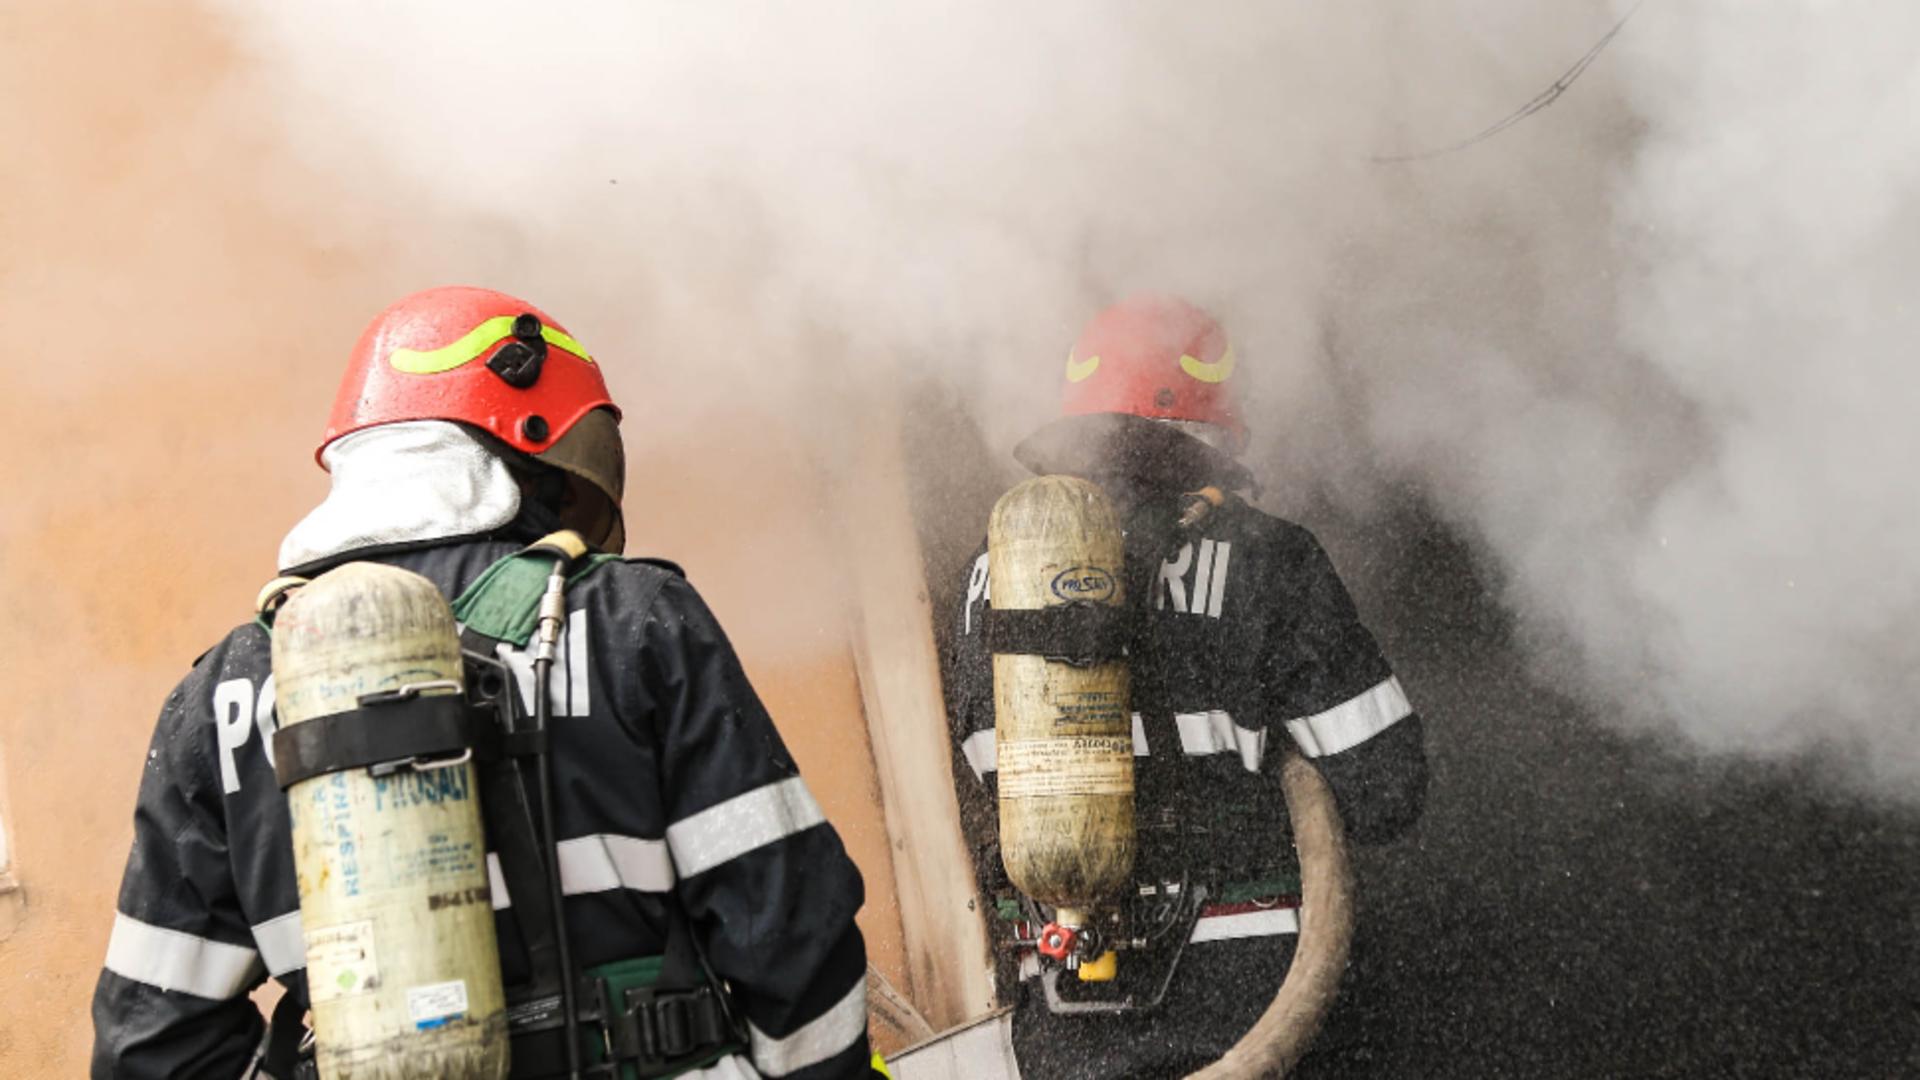 Incendiu la o fabrică de încălțăminte din Arad: doi angajați erau în incintă / Foto: Arhivă ISU